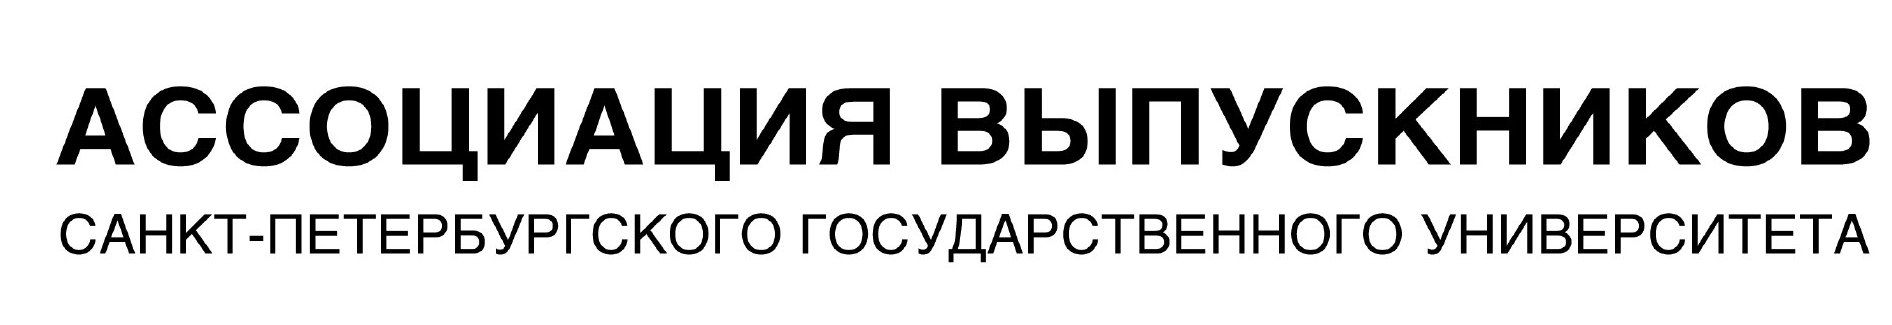 Ассоциация выпускников СПбГУ